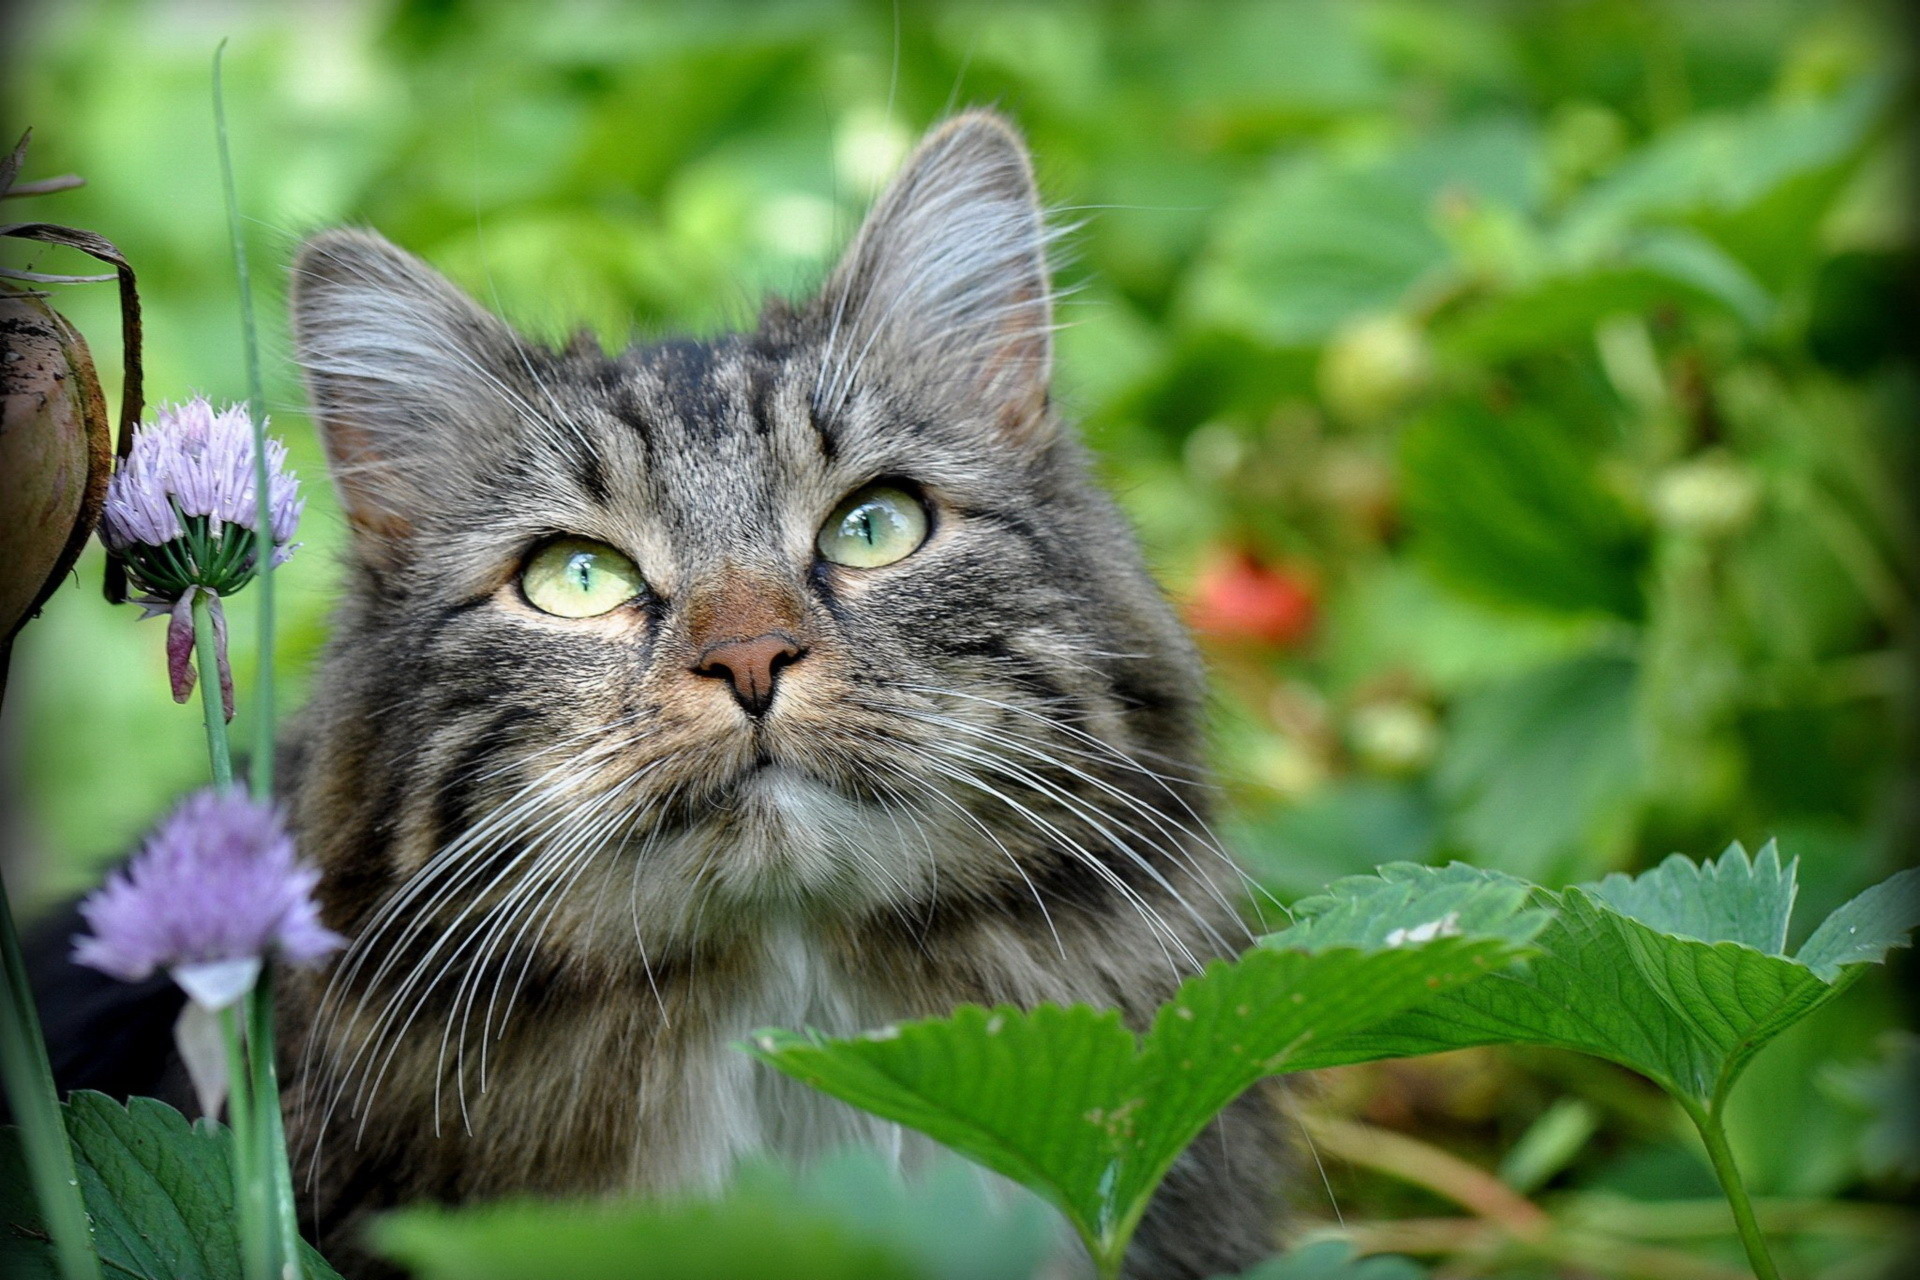 Сибирская кошка на природе